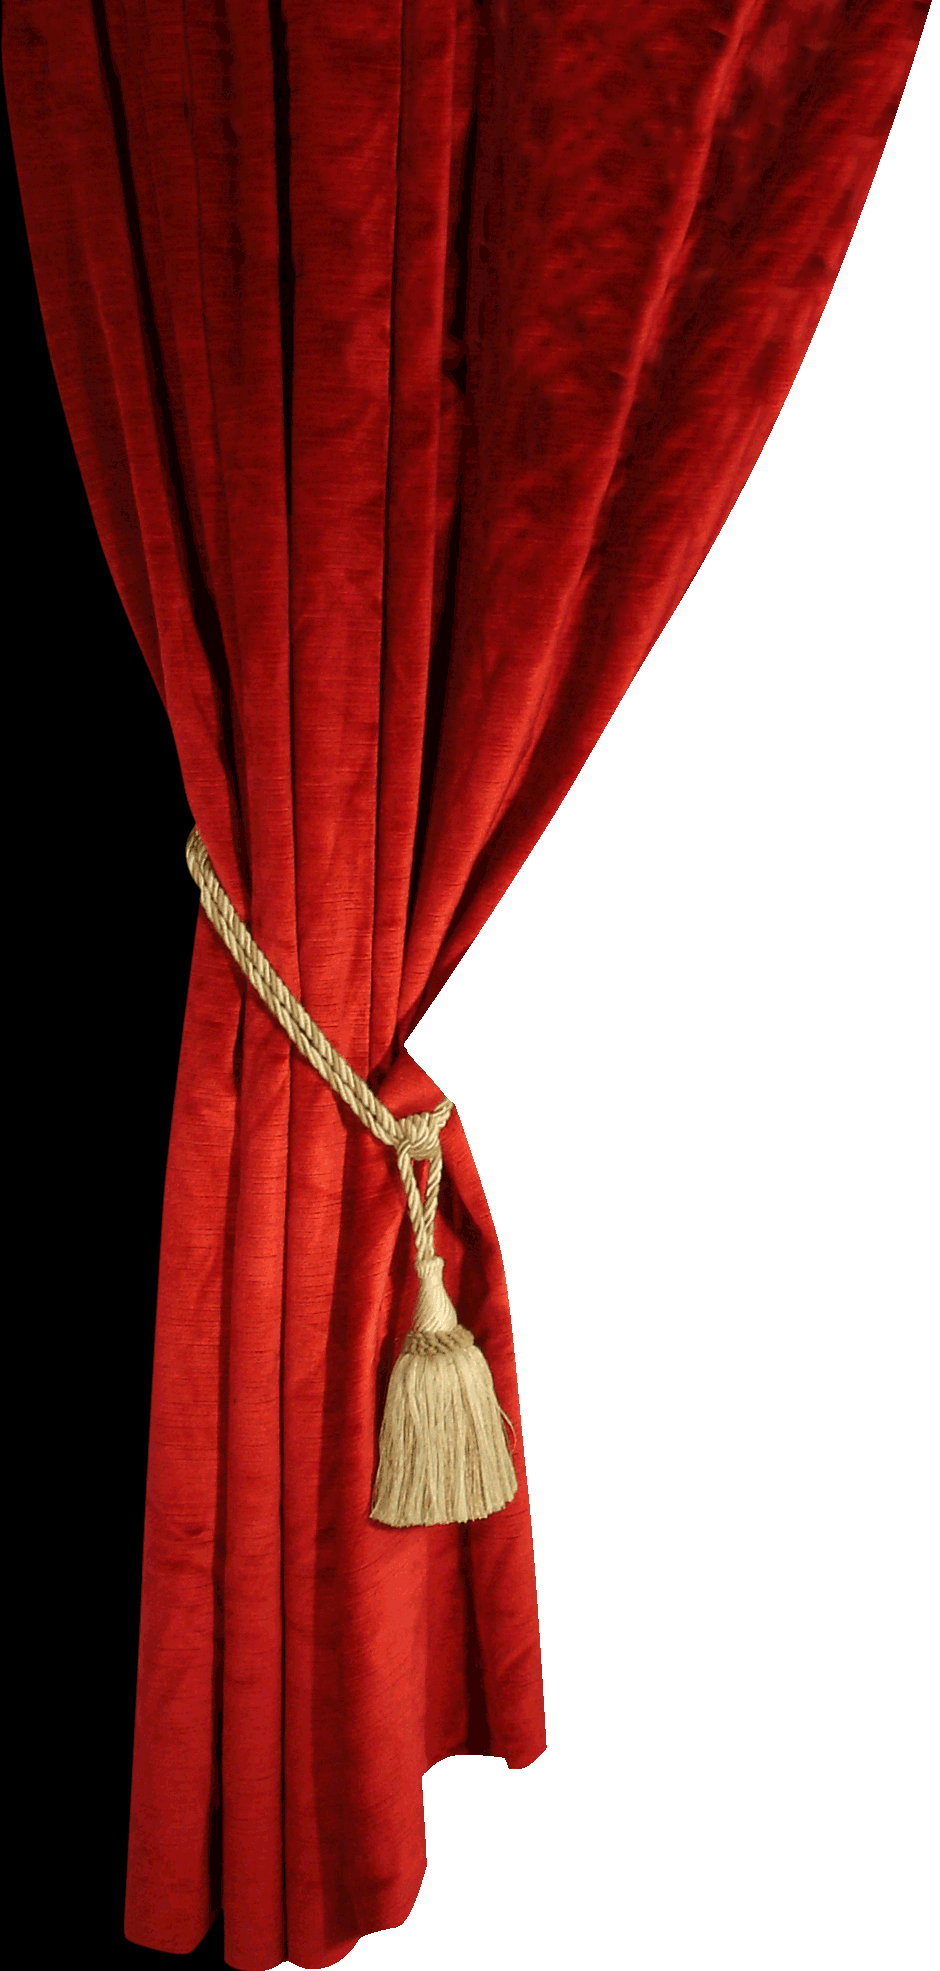 curtain clipart left